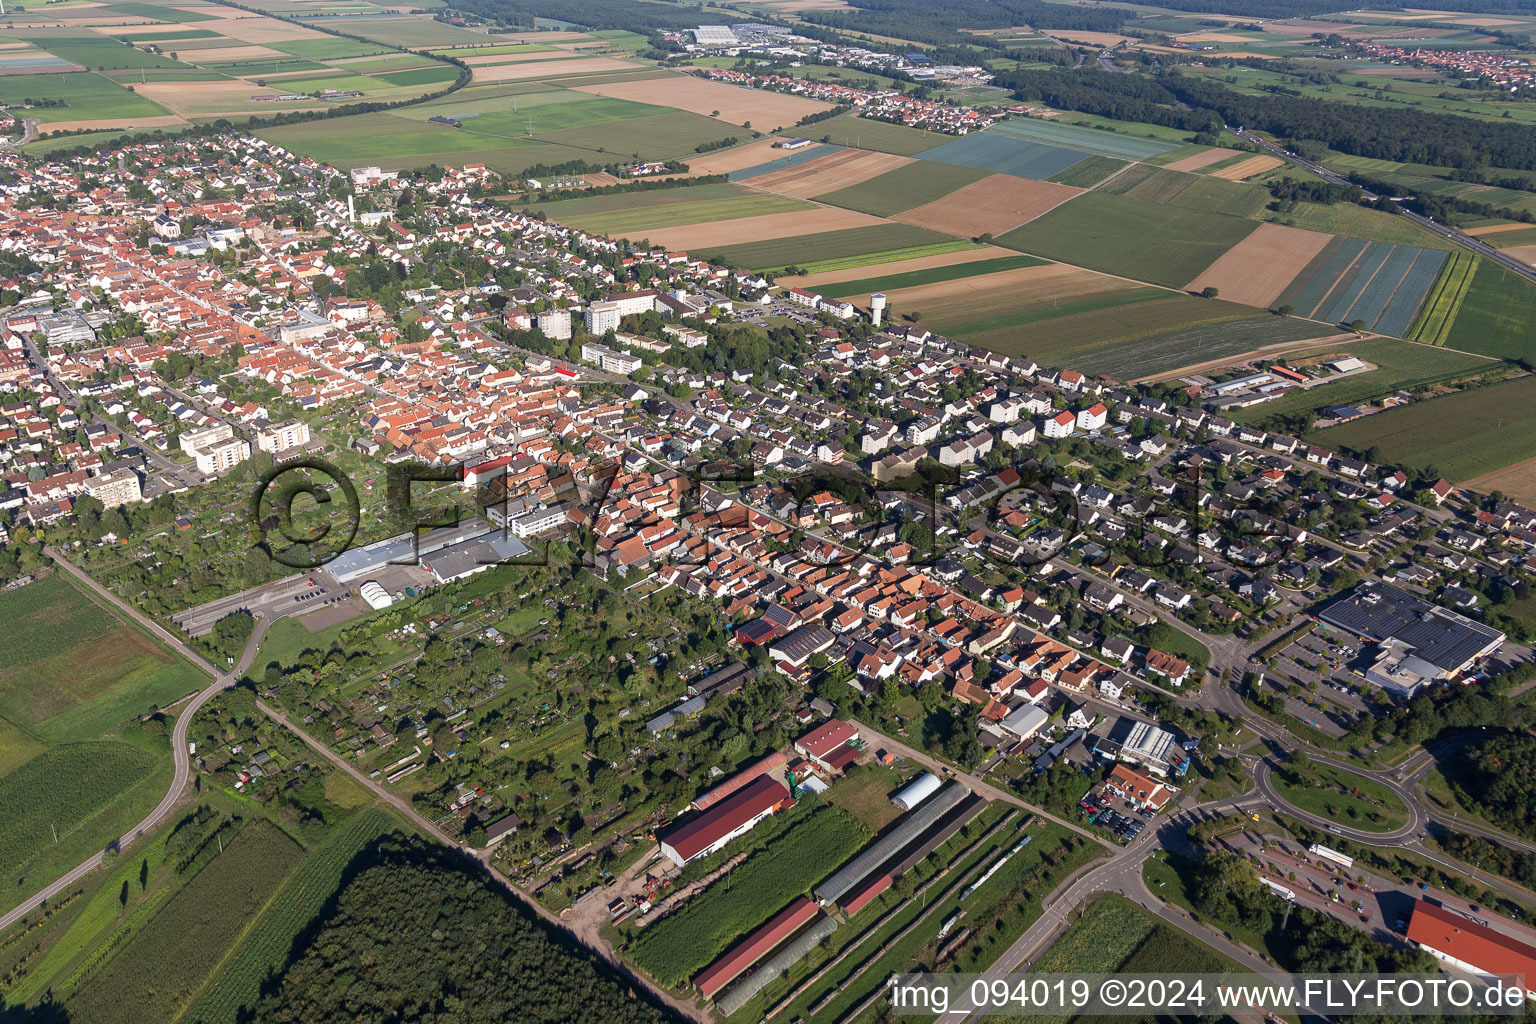 Vue aérienne de Vue des rues et des maisons des quartiers résidentiels à Kandel dans le département Rhénanie-Palatinat, Allemagne